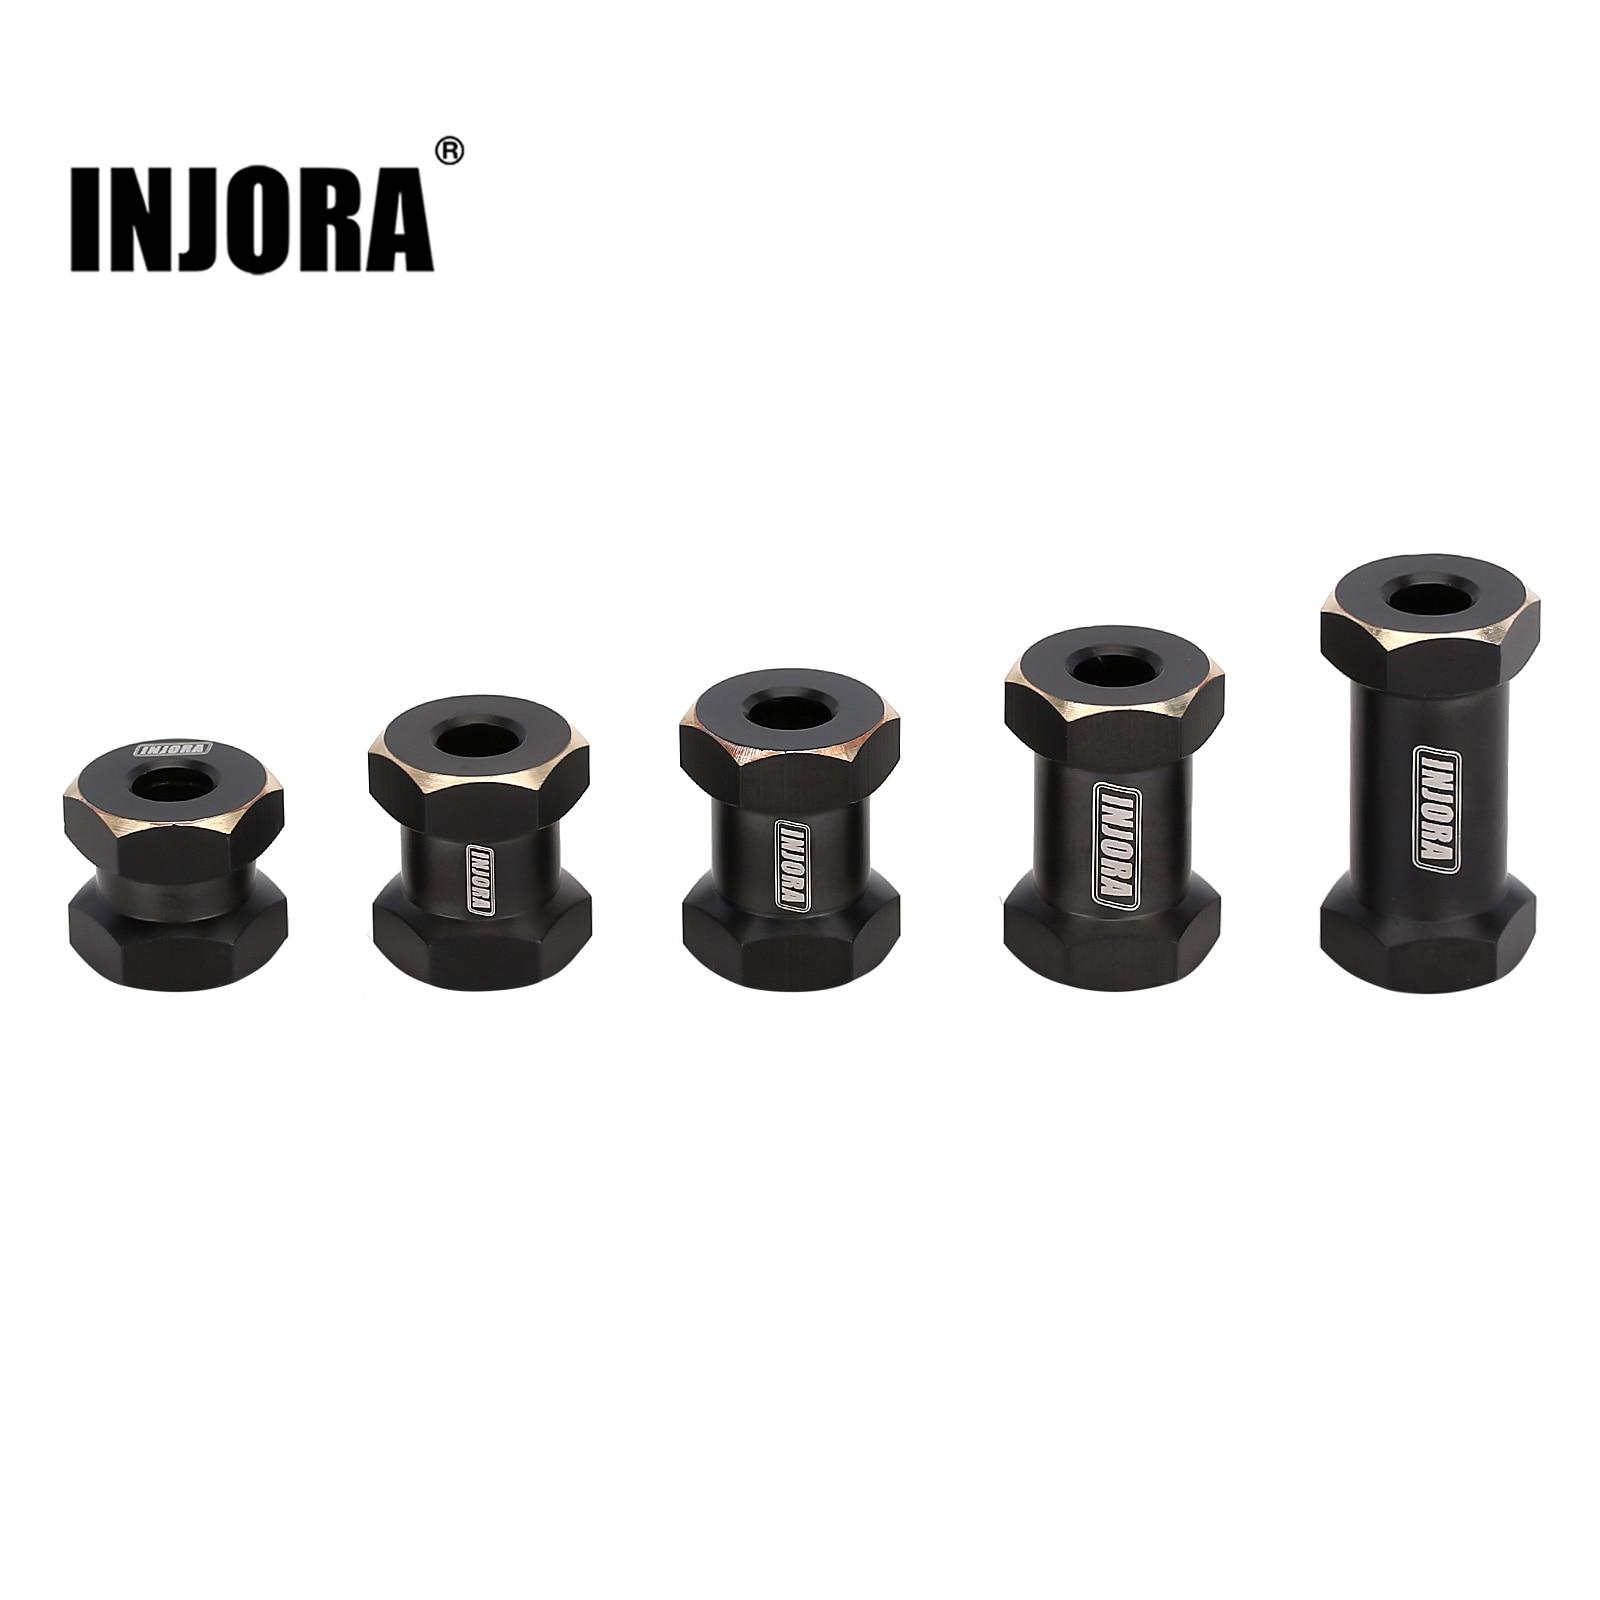 INJORA-Heavy-Black-Coating-Brass-12MM-Wheel-Hex-12-15-17-20-25MM-Extended-Adapter-for.jpg